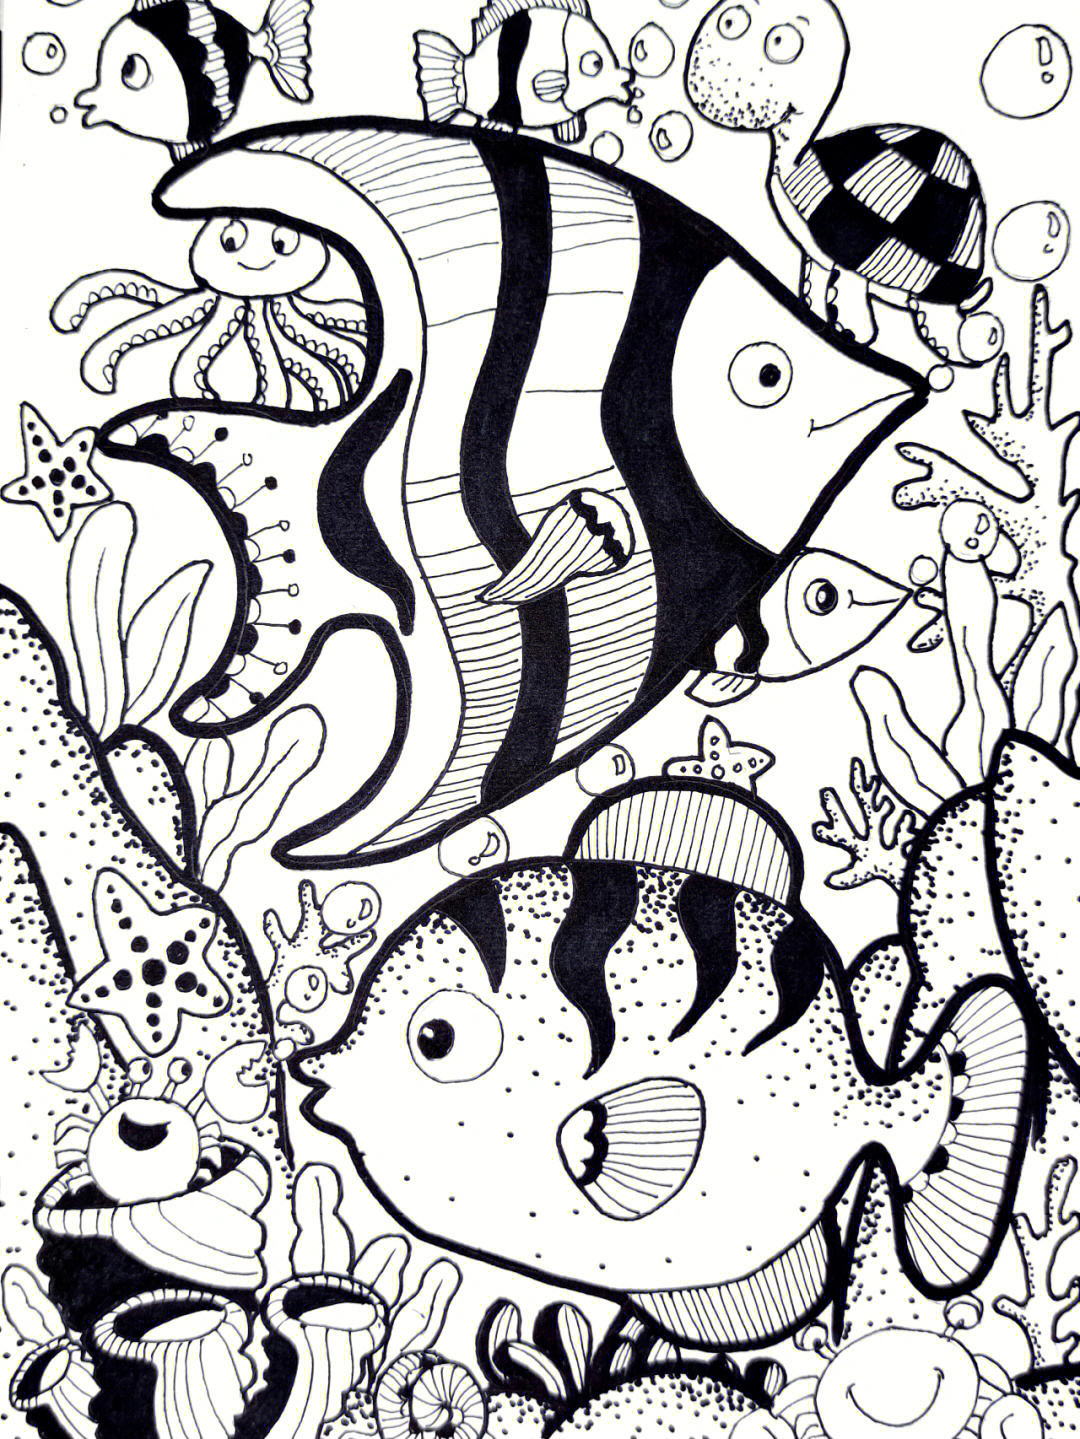 速写三级《海底世界》点线面 黑白装饰画